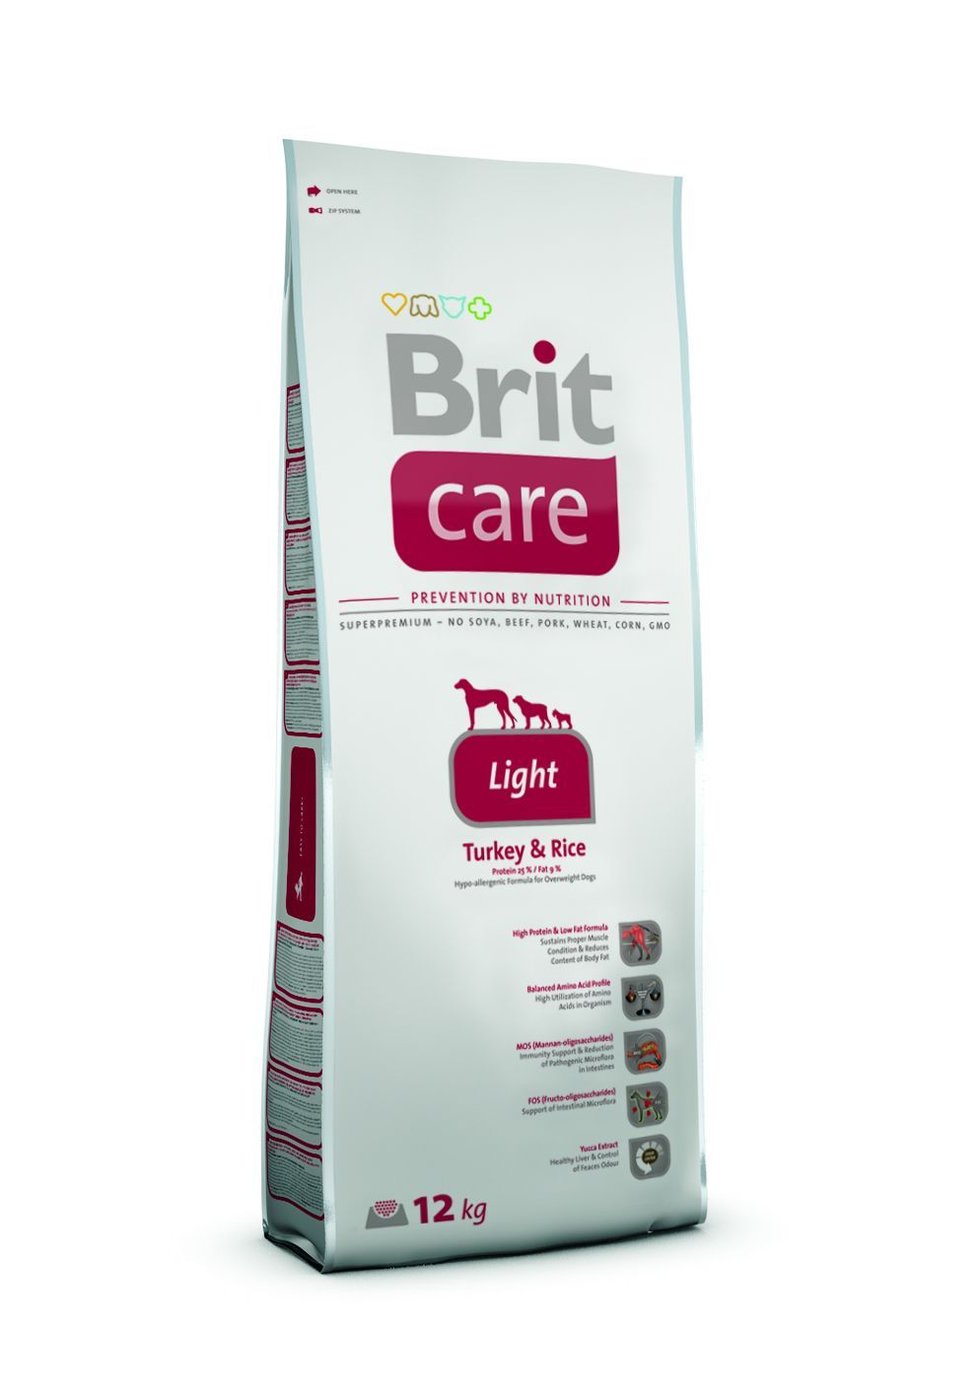 Vysoce stravitelné krmivo Brit Care Light  pro psy s nadváhou. Má velký obsah krocaního masa a nízký obsah tuku. Brit, 3 kg/122 Kč